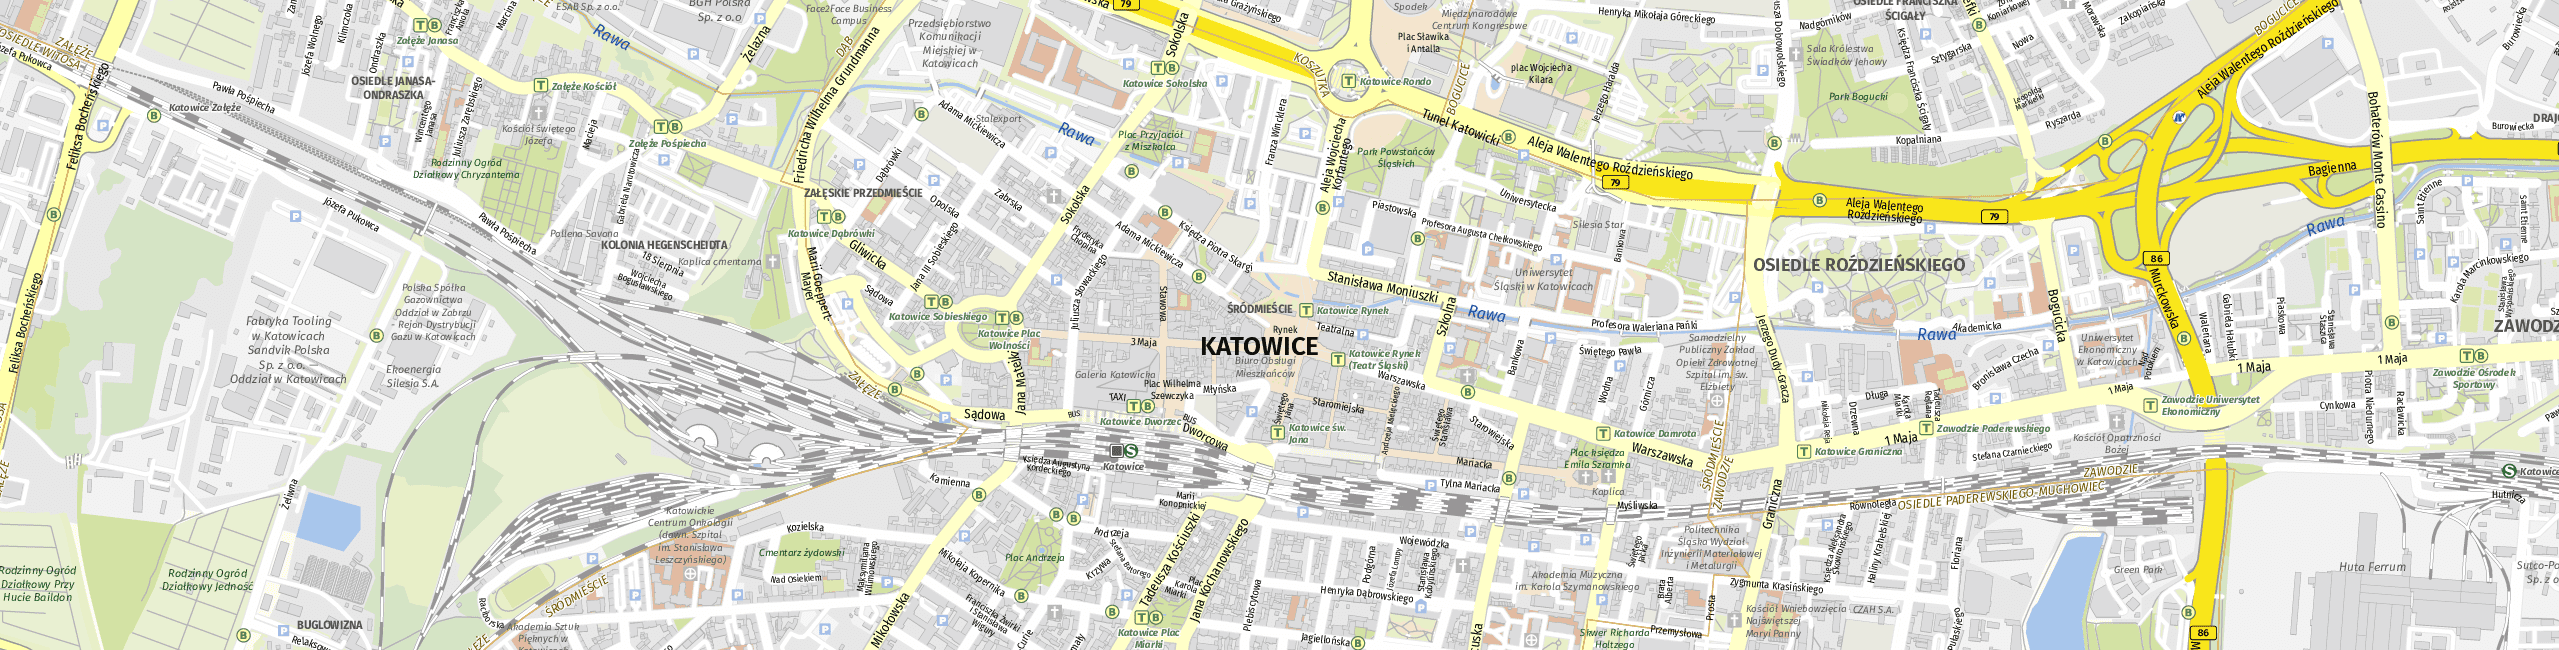 Stadtplan Katowice zum Downloaden.